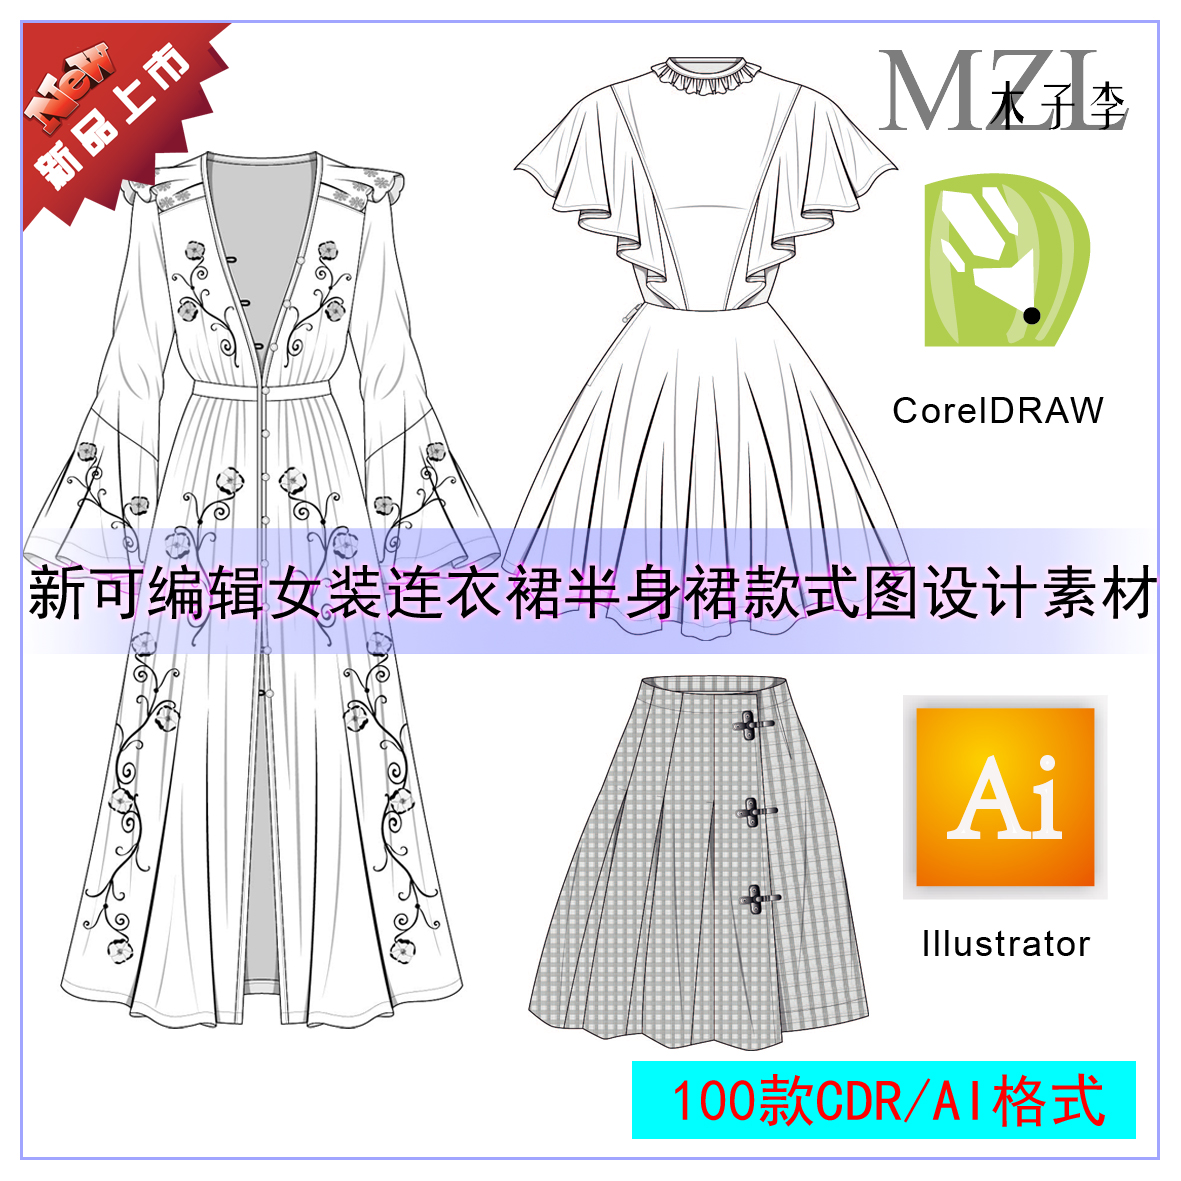 a76新可编辑女装连衣裙半身裙款式图cdr/ai服装设计素材 矢量图集